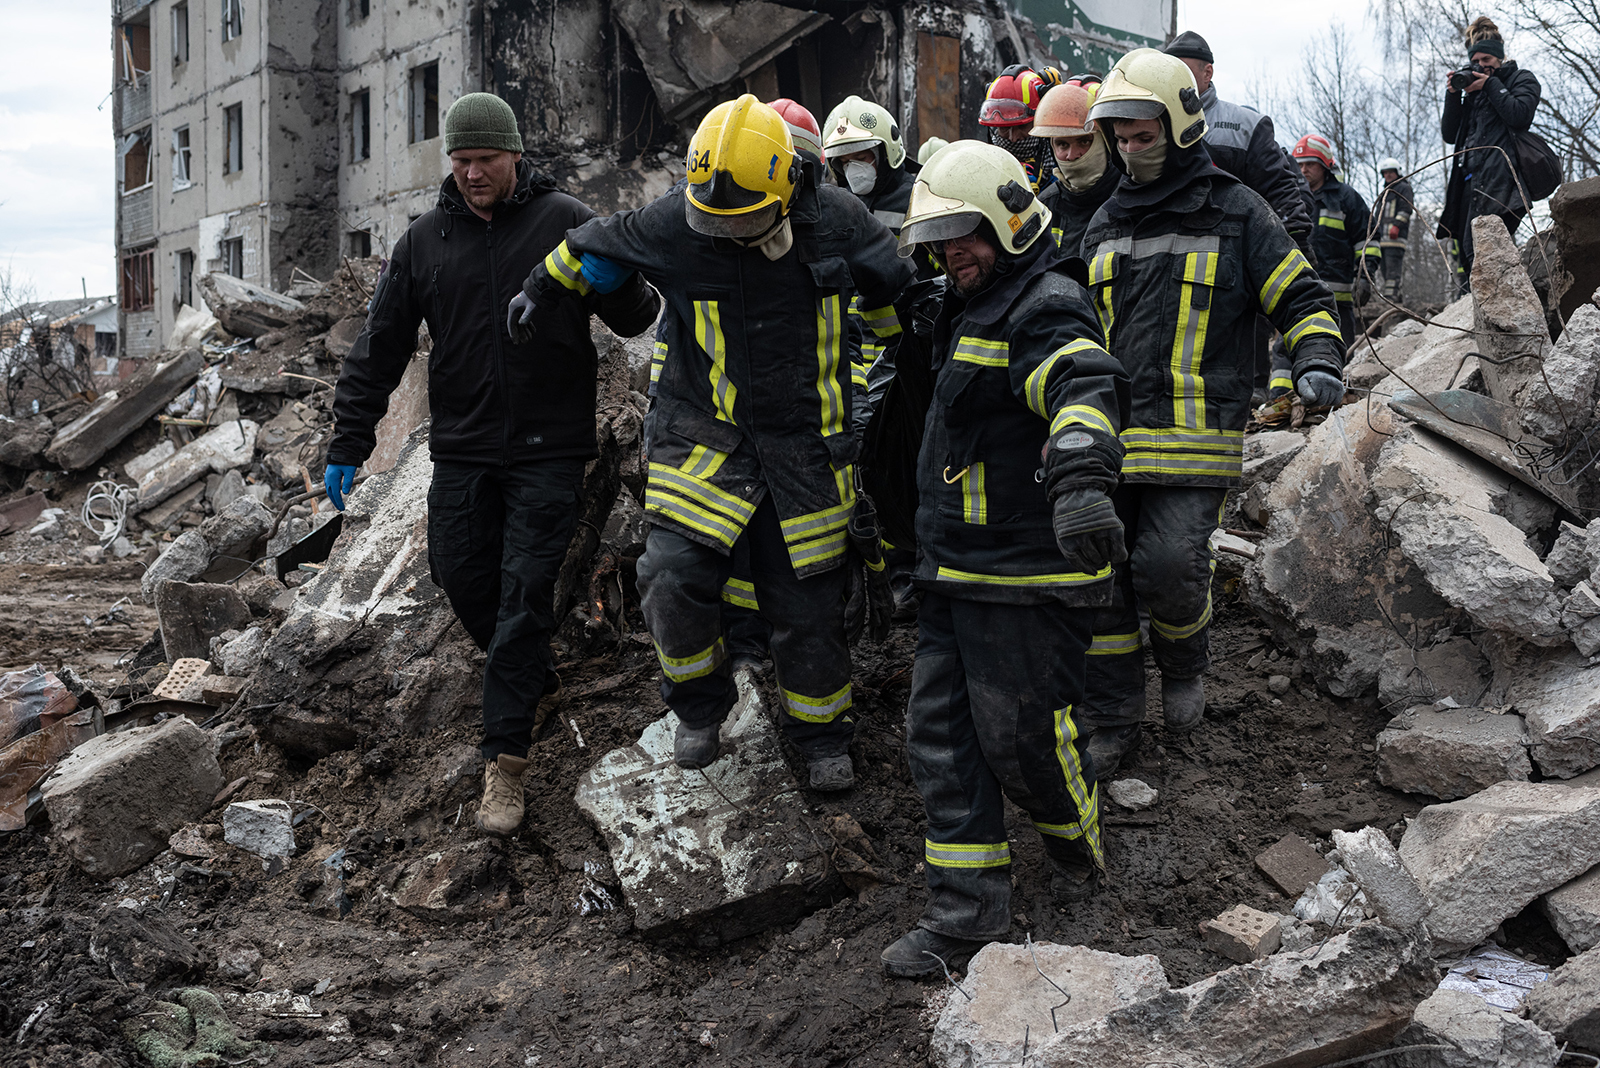 4 月 9 日，救援人员在乌克兰博罗迪安卡的一座被毁公寓楼的废墟中发现了一具尸体。